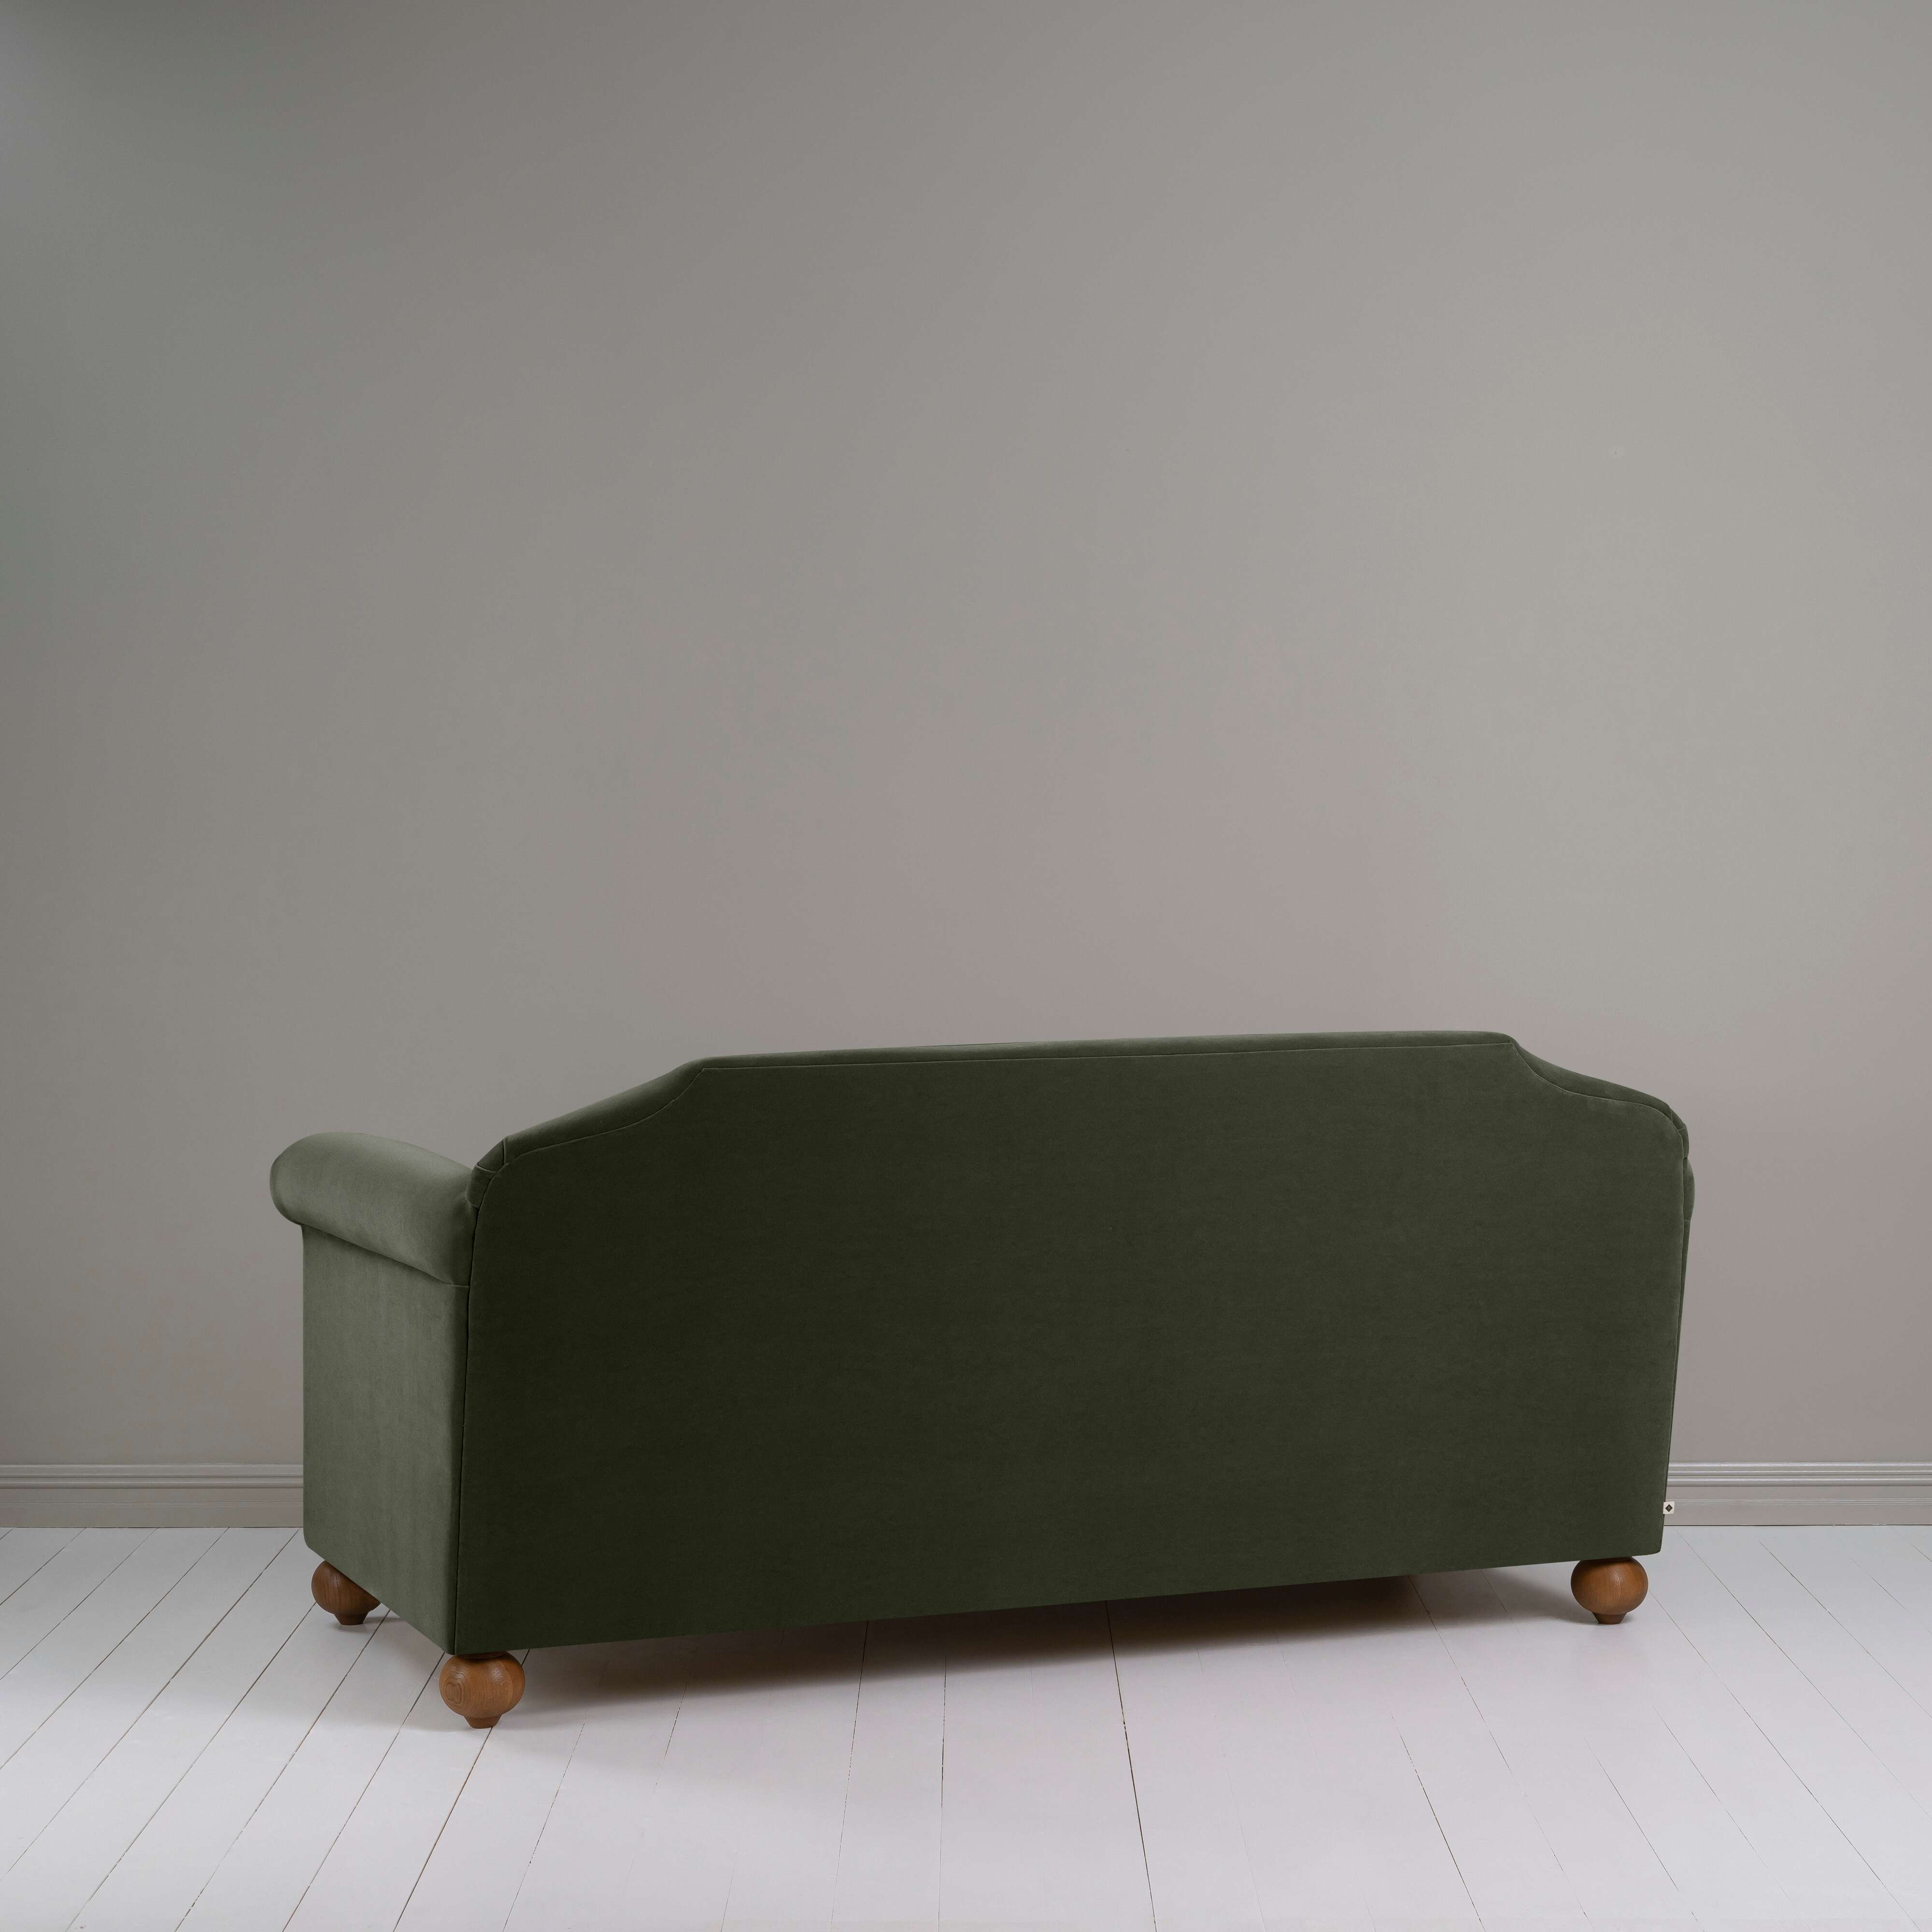  Dolittle 3 Seater Sofa in Intelligent Velvet Seaweed 